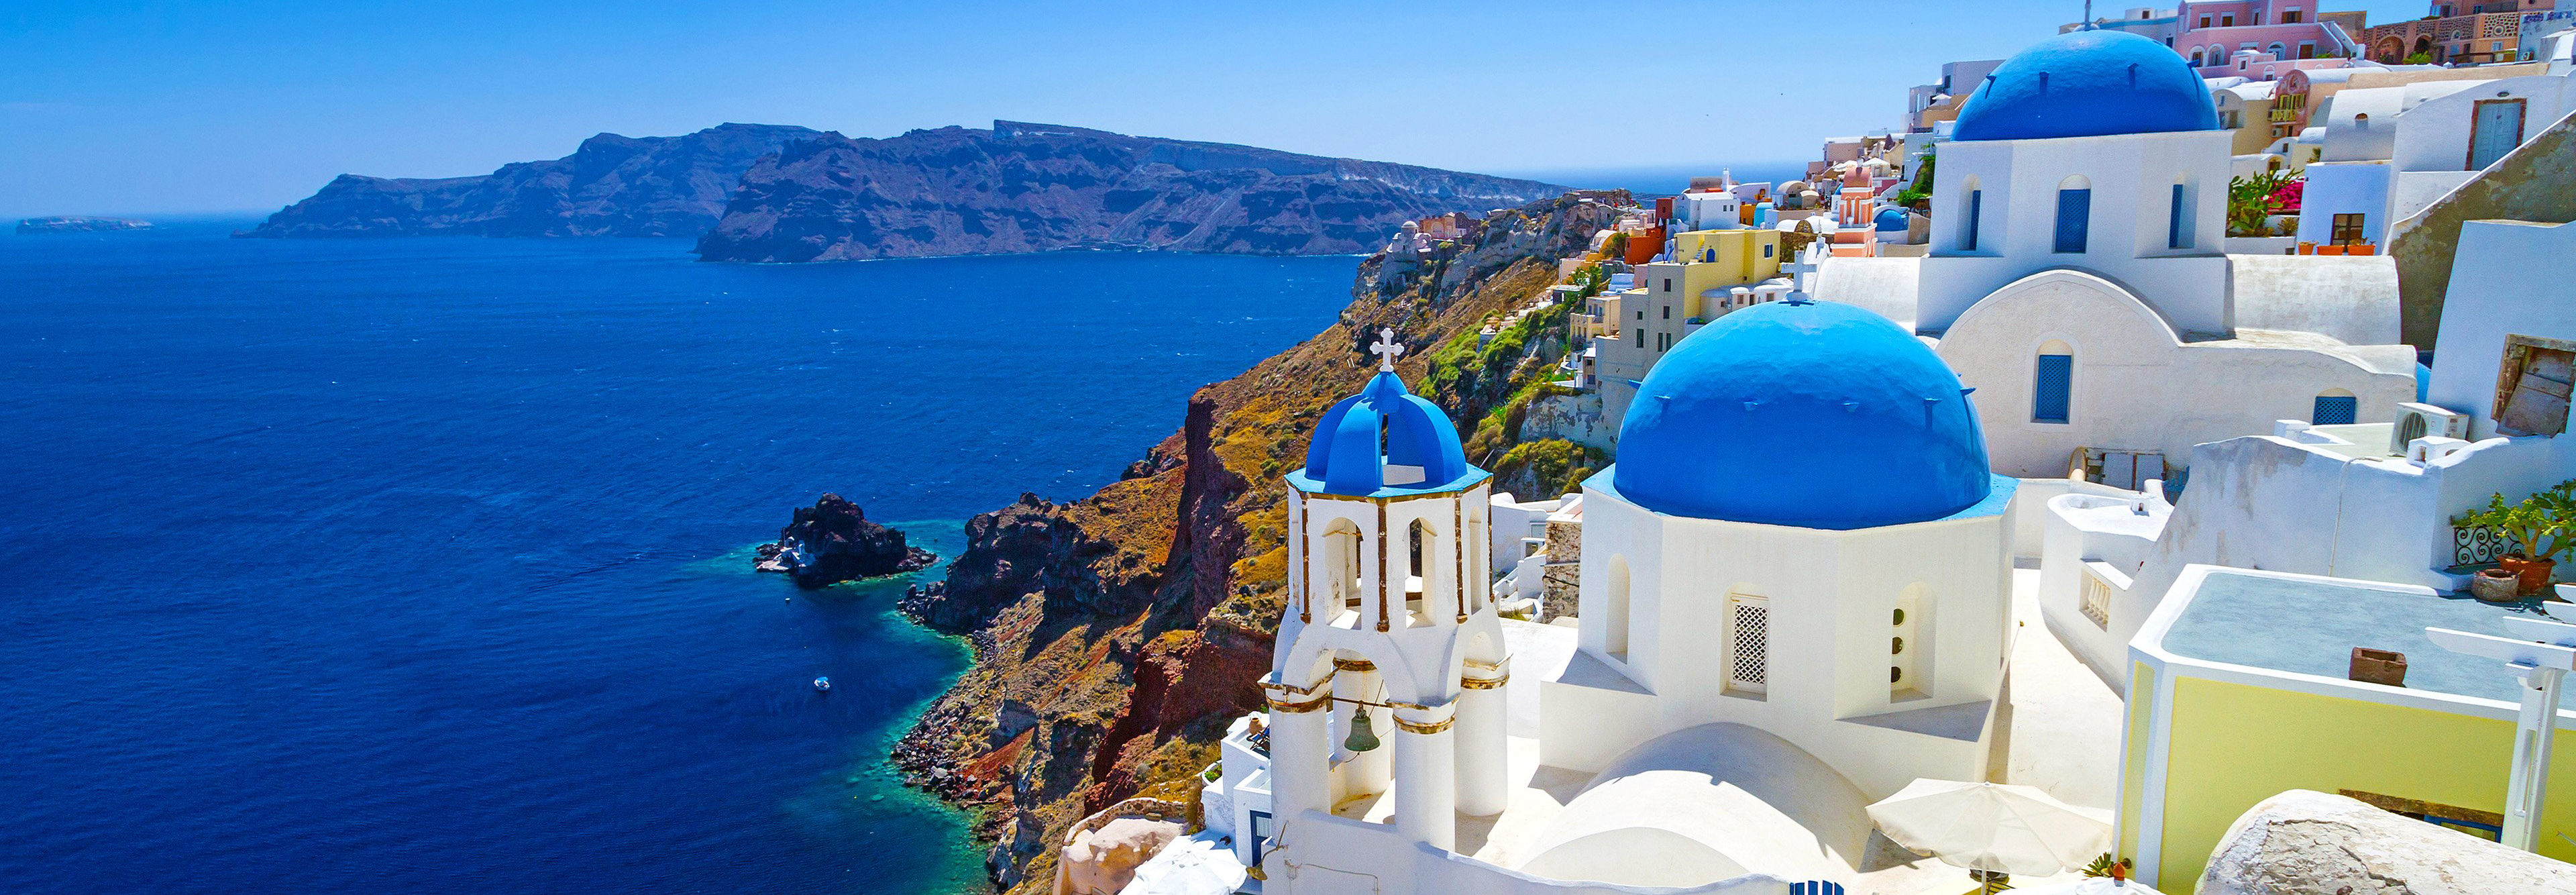 ماجرای سفر به اروپا بدون ویزا چیست؟ | سفر به یونان بدون شینگن